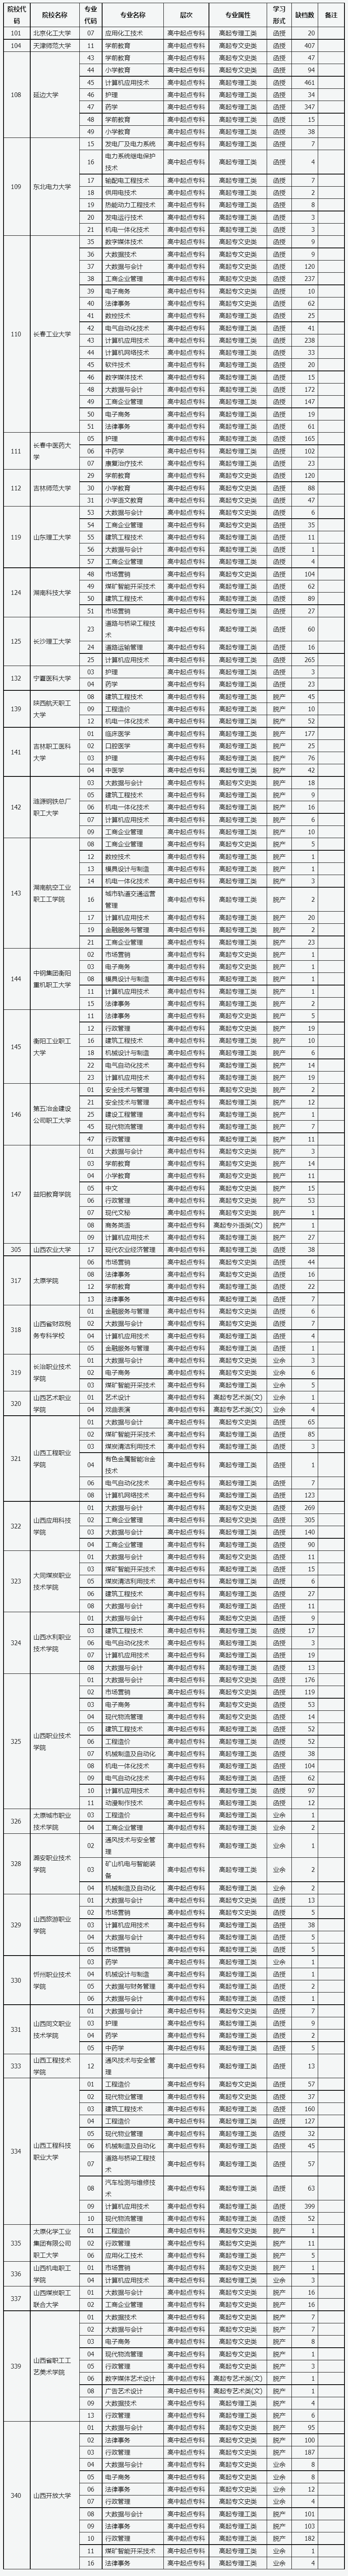 山西省2022年成人高校招生征集志愿公告第10号.png